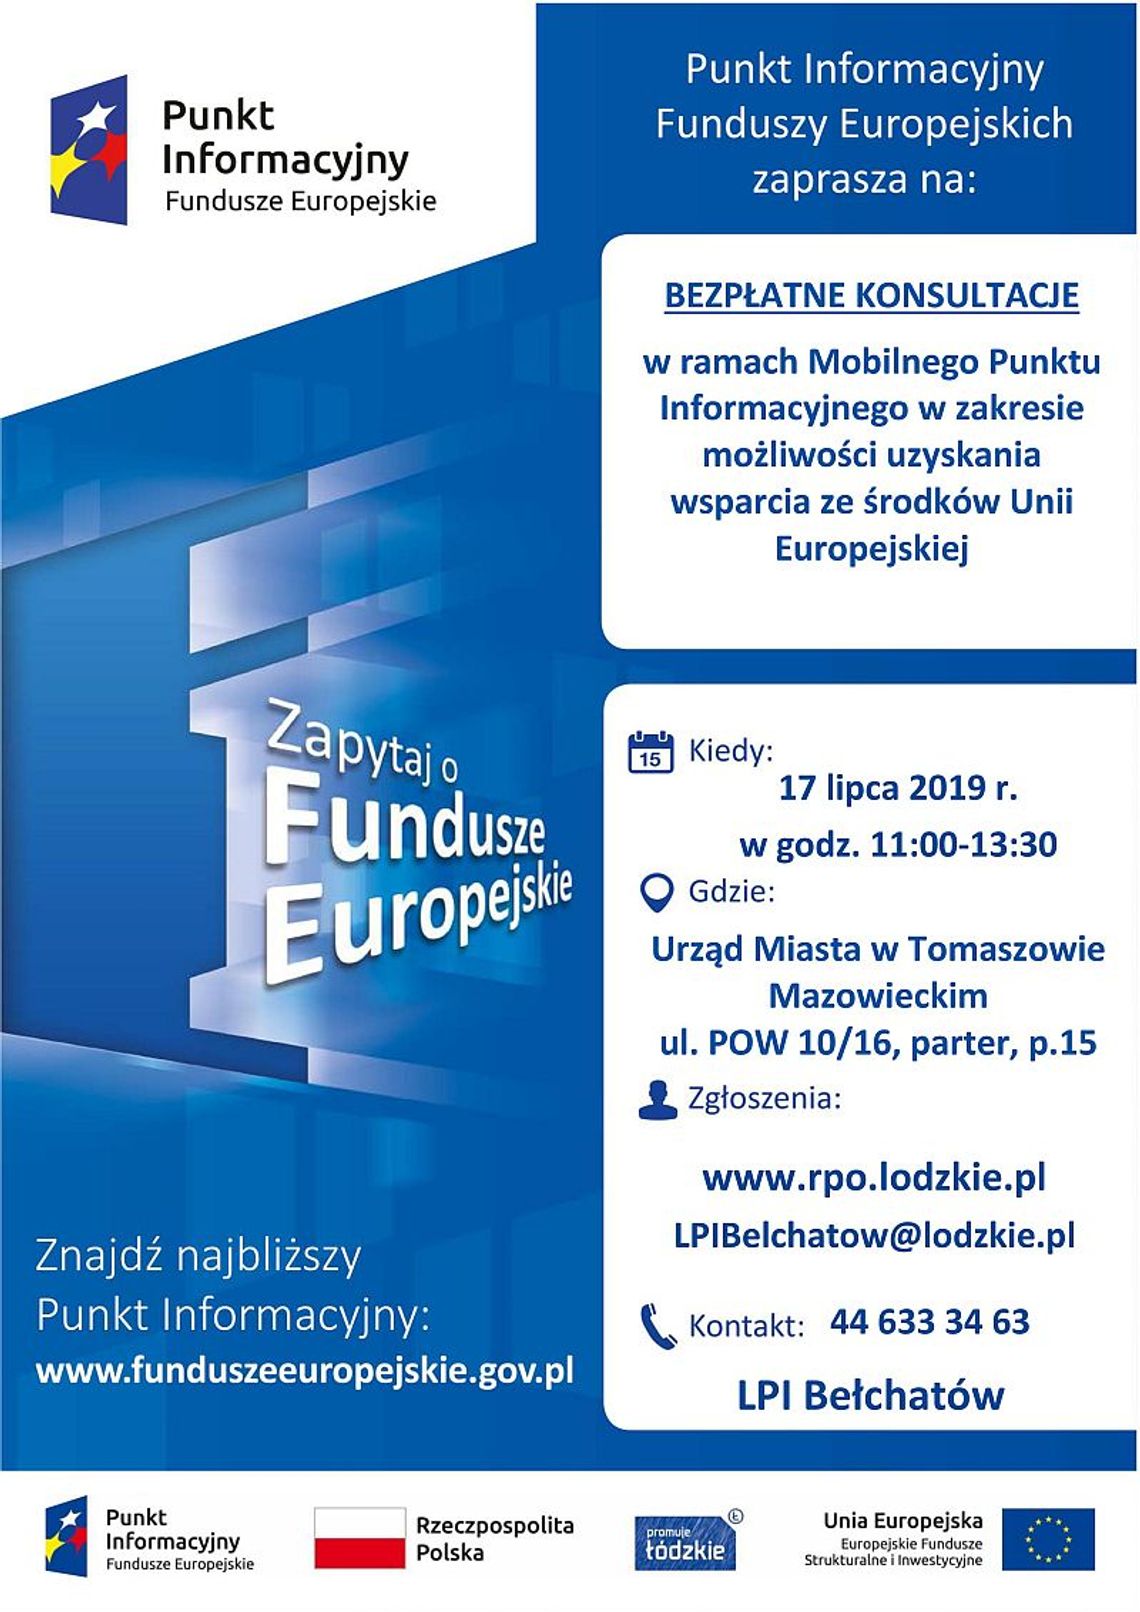  Mobilny Punkt Informacyjny Funduszy Europejskich w Tomaszowie